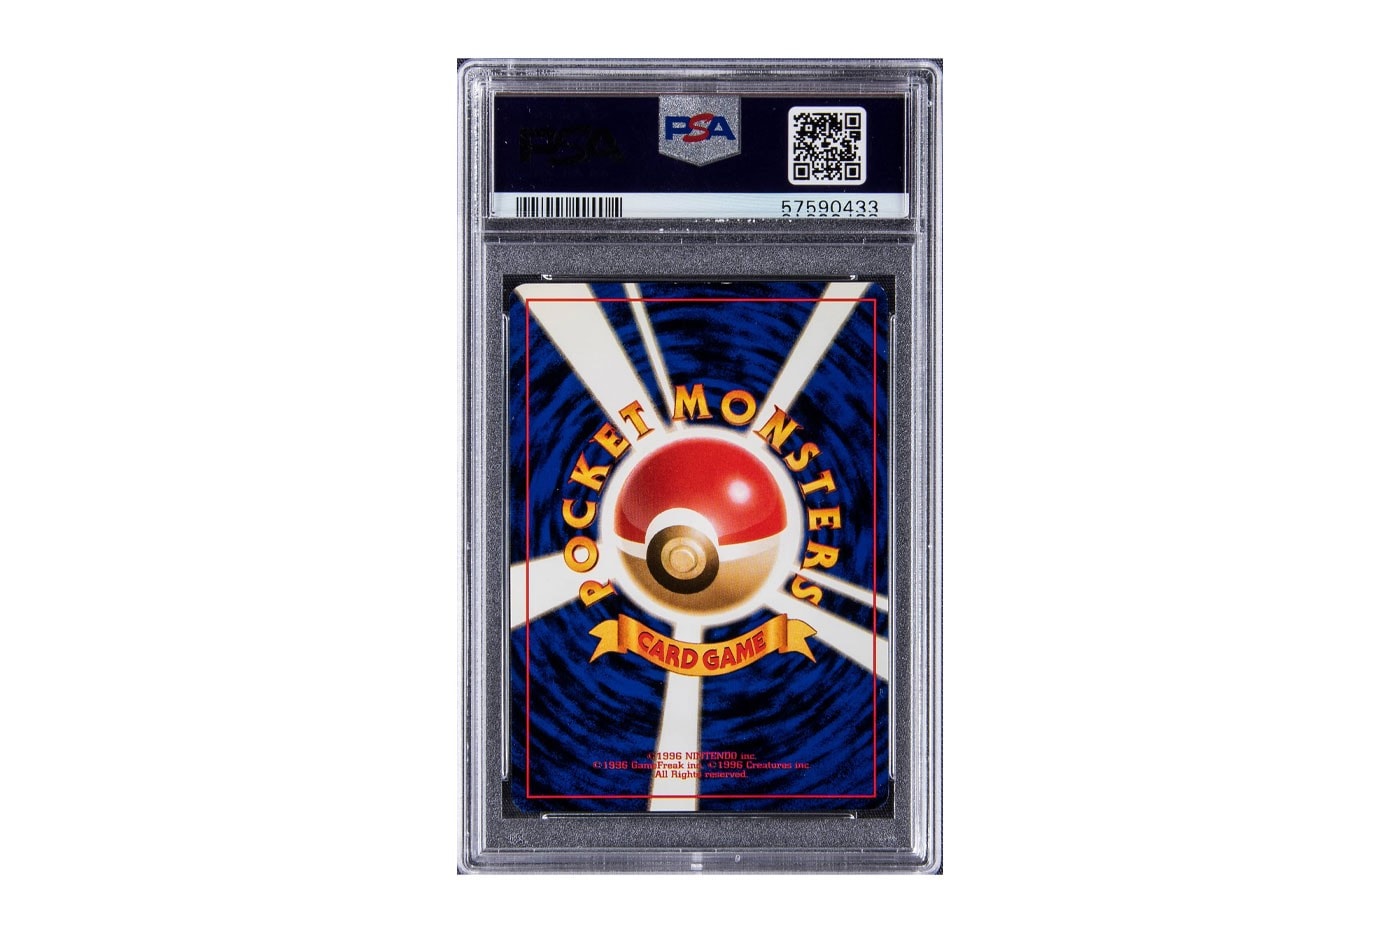 限量 1998 年 Pikachu Pokémon 卡牌以 $900,000 美元高價拍賣